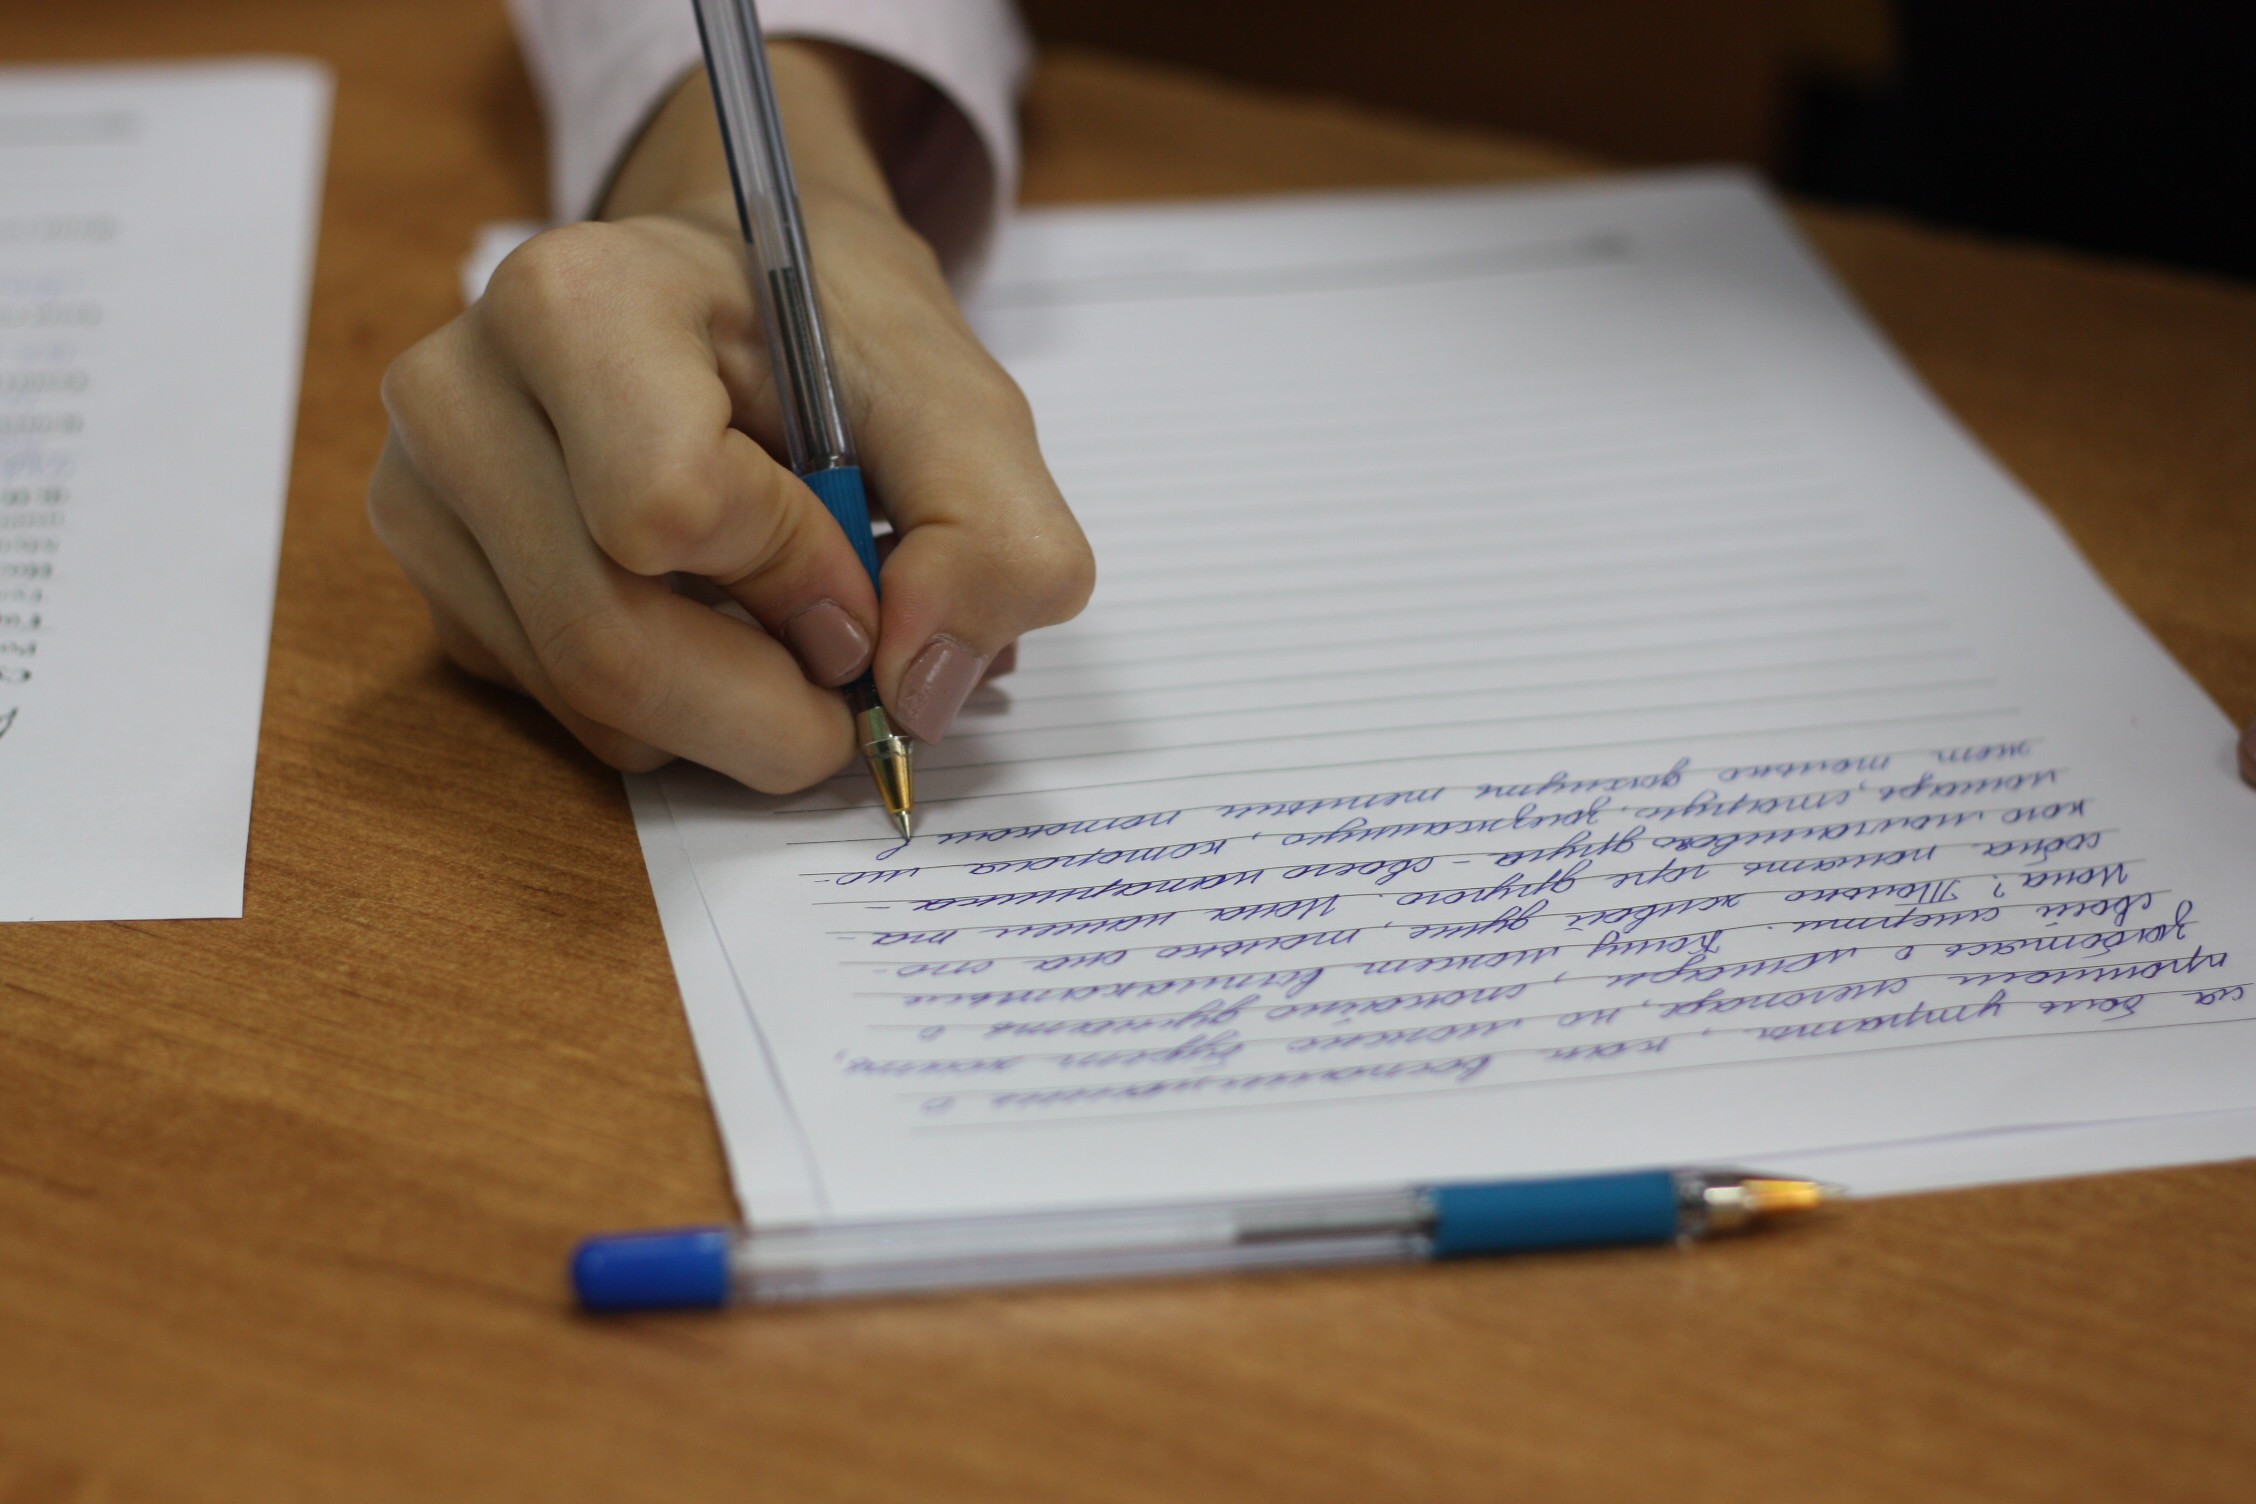 Школьники из Новозыбковского района победили в конкурсе “Лучший урок письма”